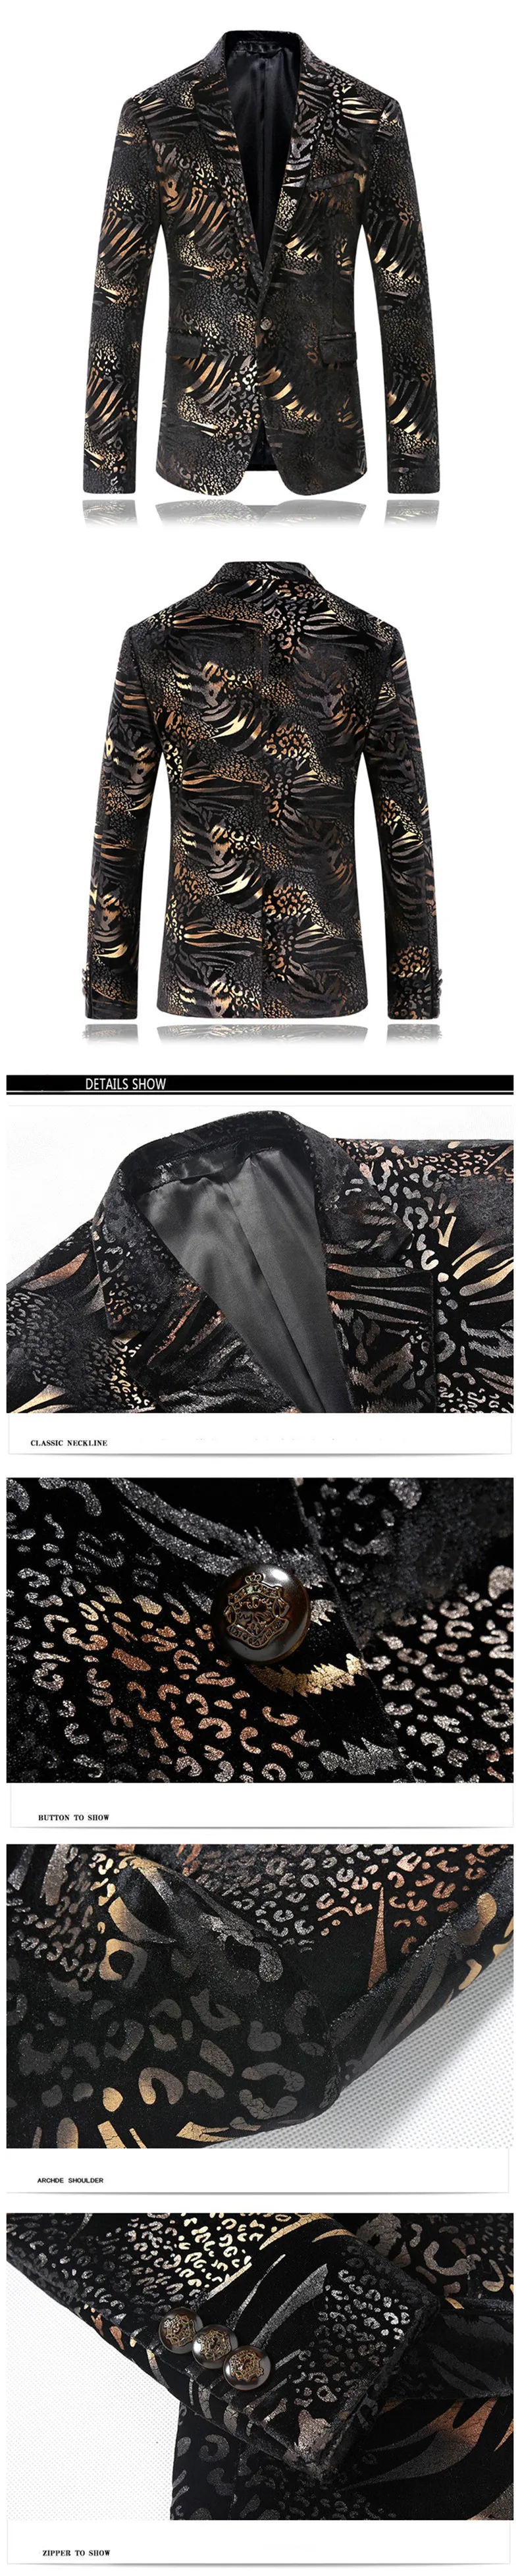 Черный пиджак Для мужчин цветочный узор Пейсли Свадебный костюм куртка Slim Fit стильные сценические костюмы Одежда Для Певица Для мужчин S Пиджаки для женщин конструкции